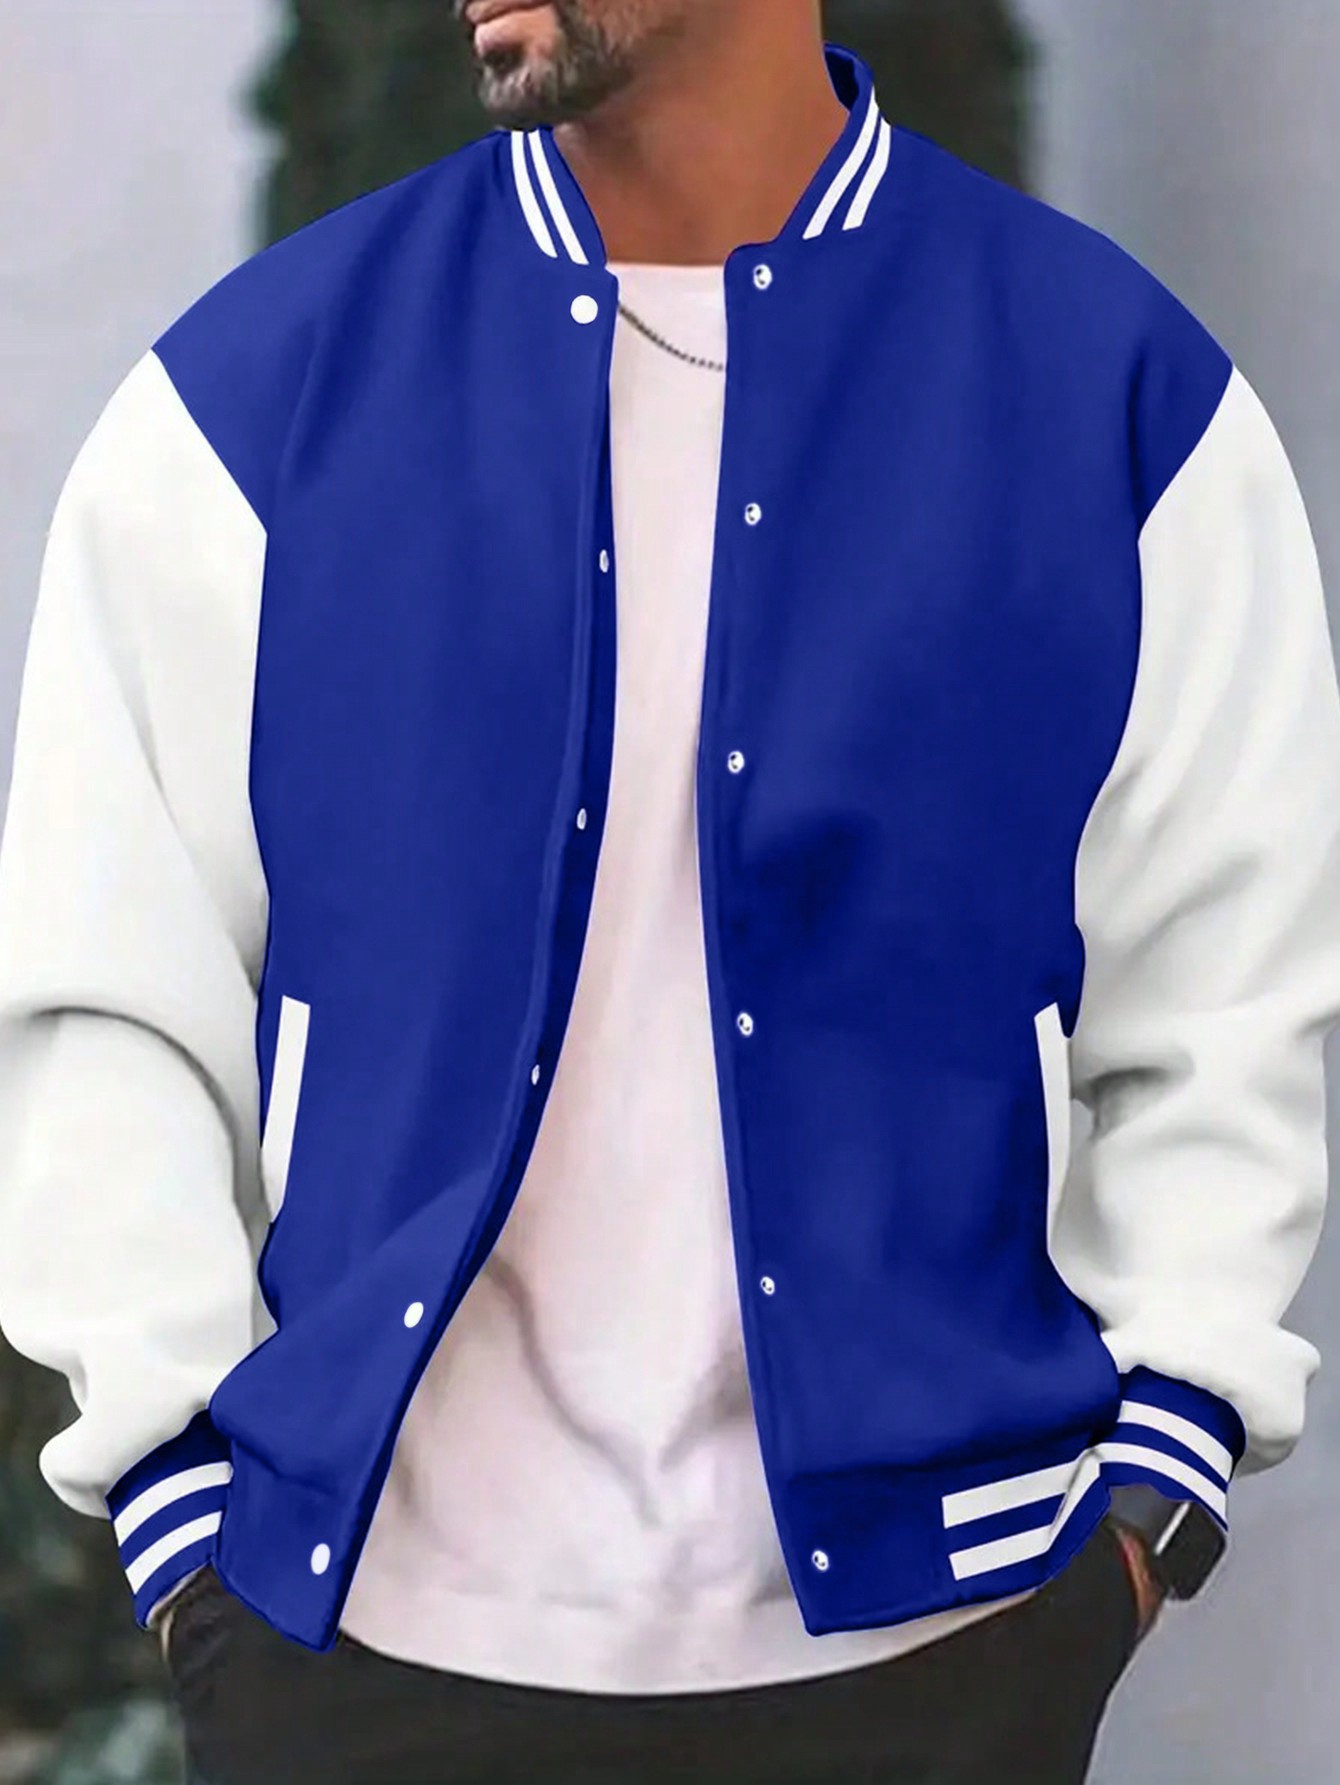 Мужская куртка в студенческом стиле с цветными блоками, королевский синий